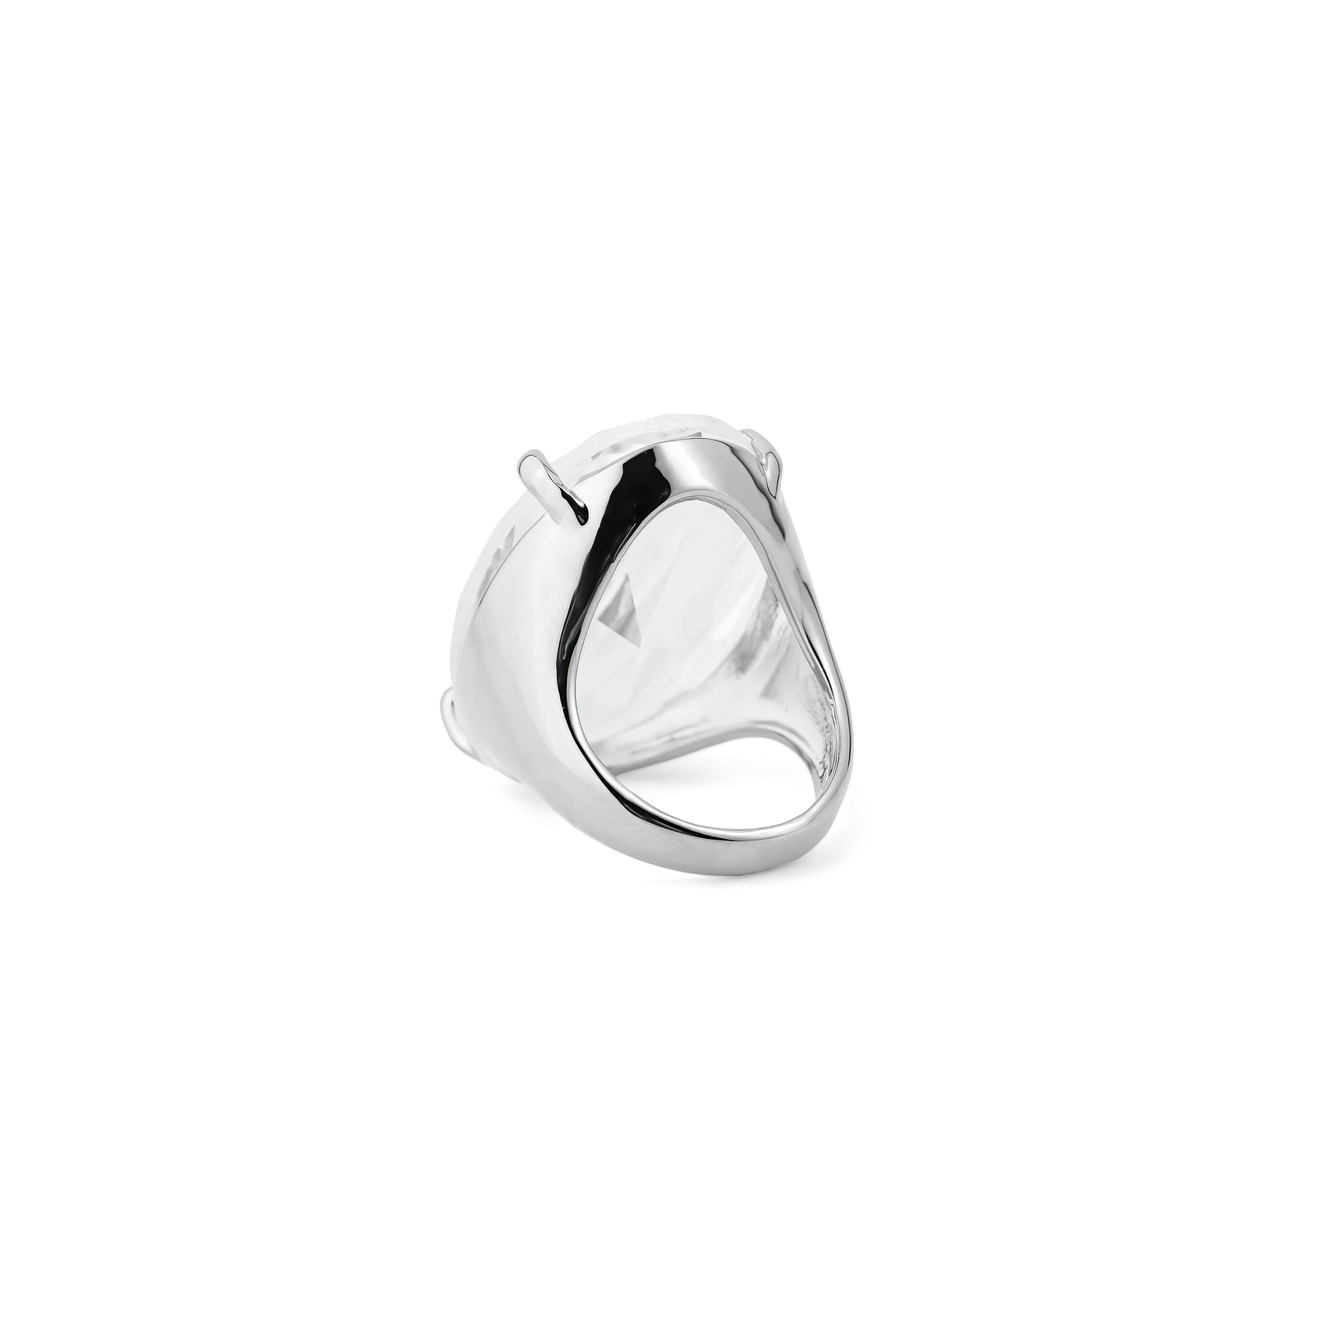 Herald Percy Серебристое кольцо с овальным кристаллом herald percy серебристая цепочка с розовым кристаллом